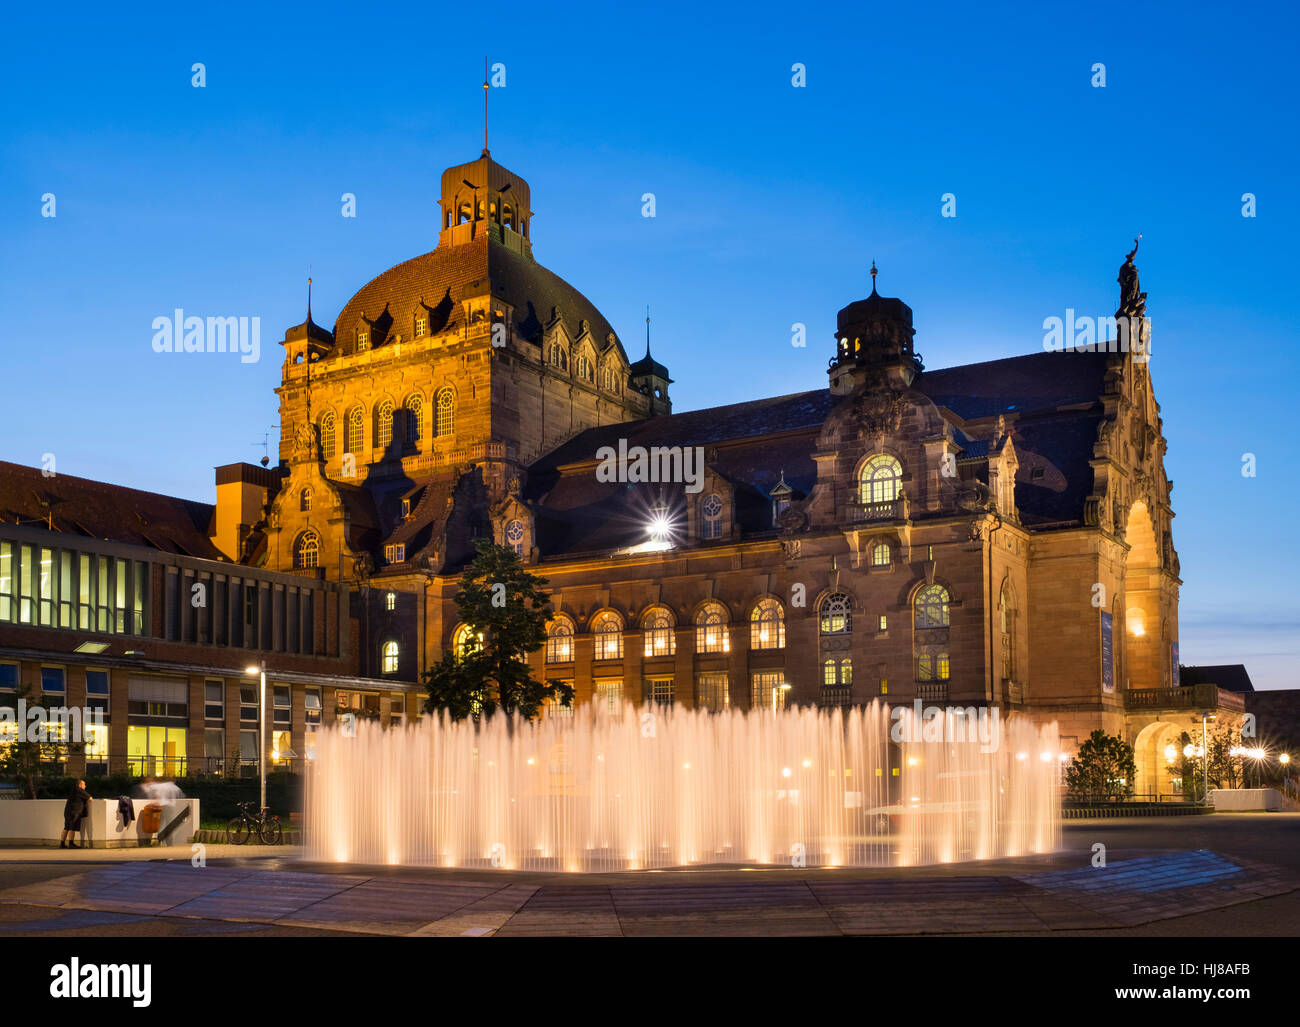 Opera House with illuminated fountain, dusk, Nuremberg, Middle Franconia, Franconia, Bavaria, Germany Stock Photo